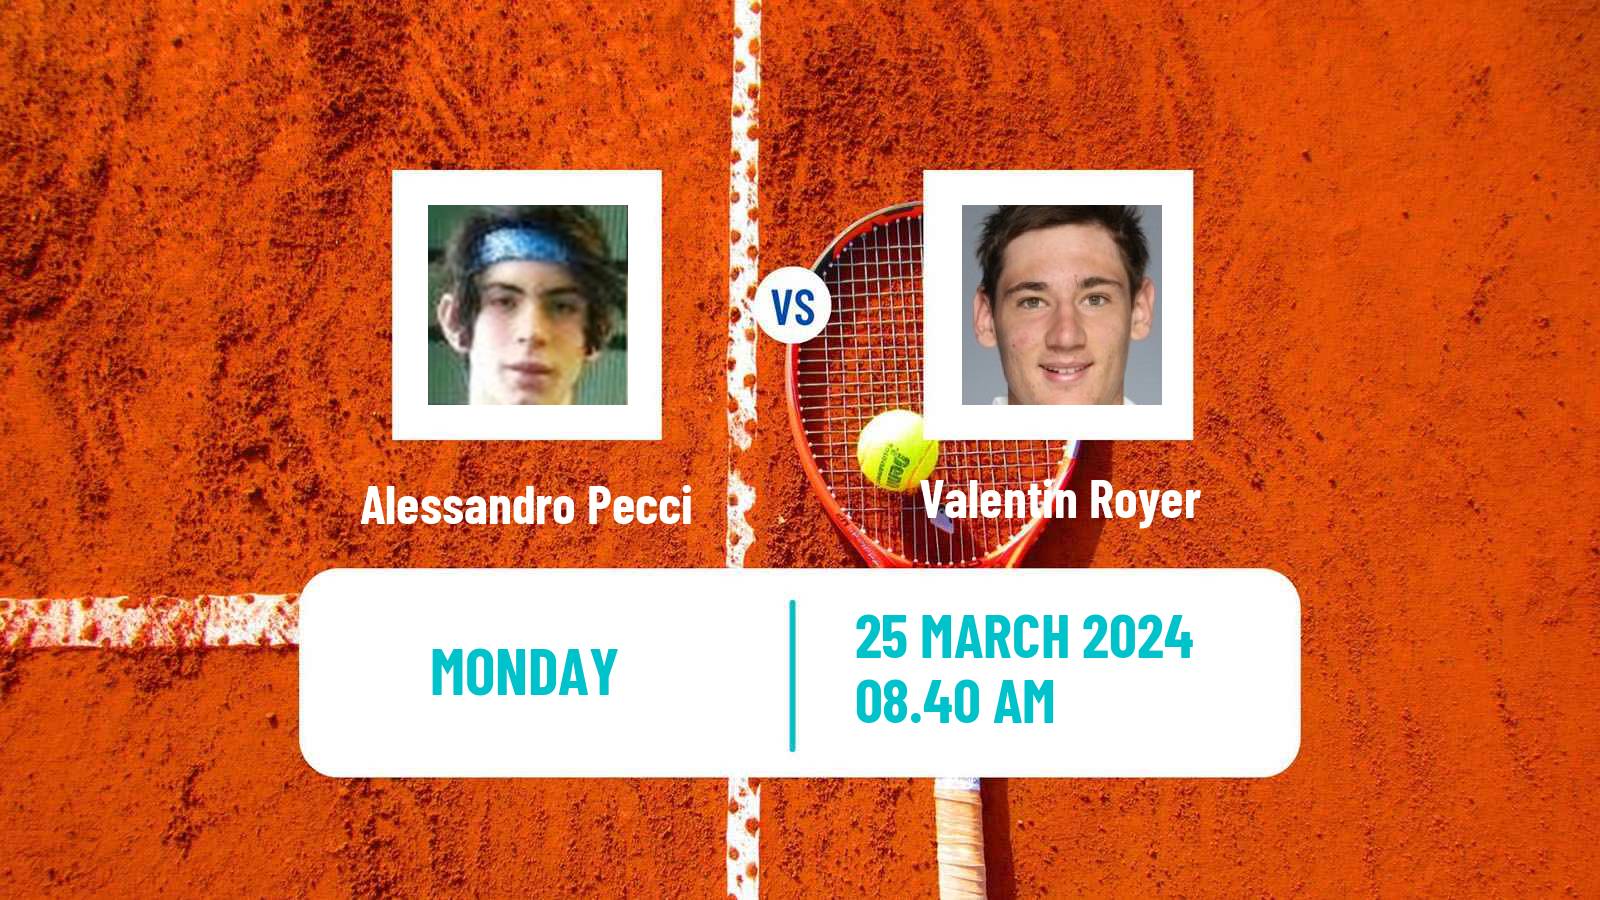 Tennis ITF M25 Santa Margherita Di Pula Men Alessandro Pecci - Valentin Royer